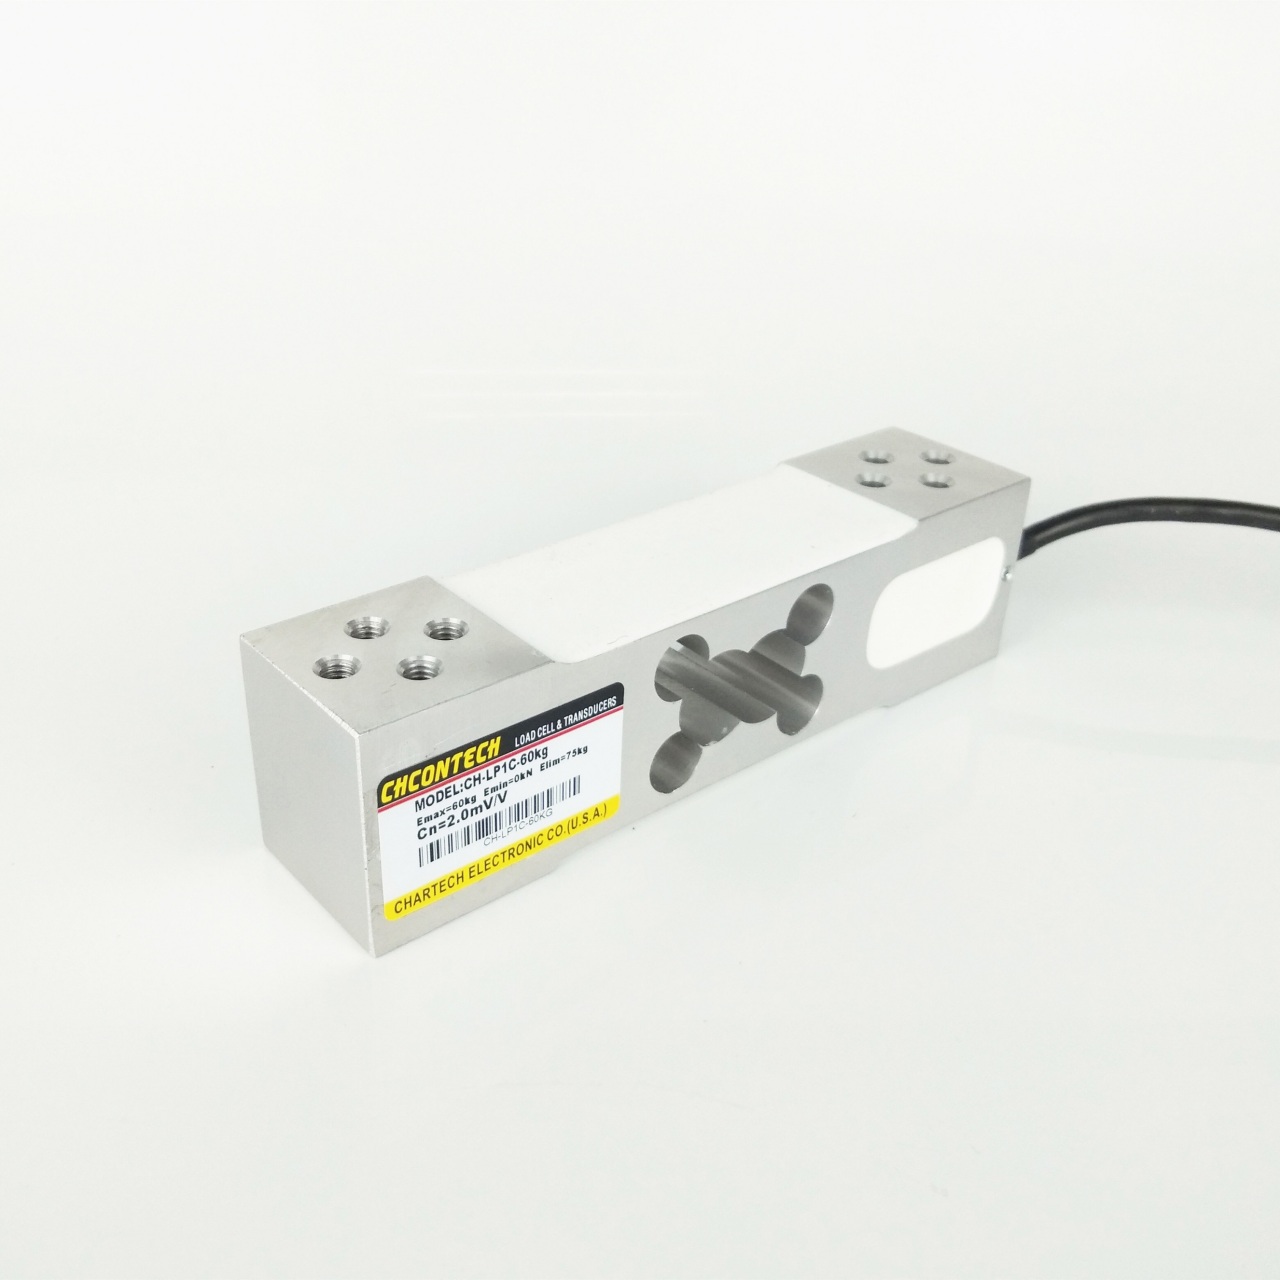 美国CHCONTECH品牌 单点式CH-LP1C 平行梁压力传感器